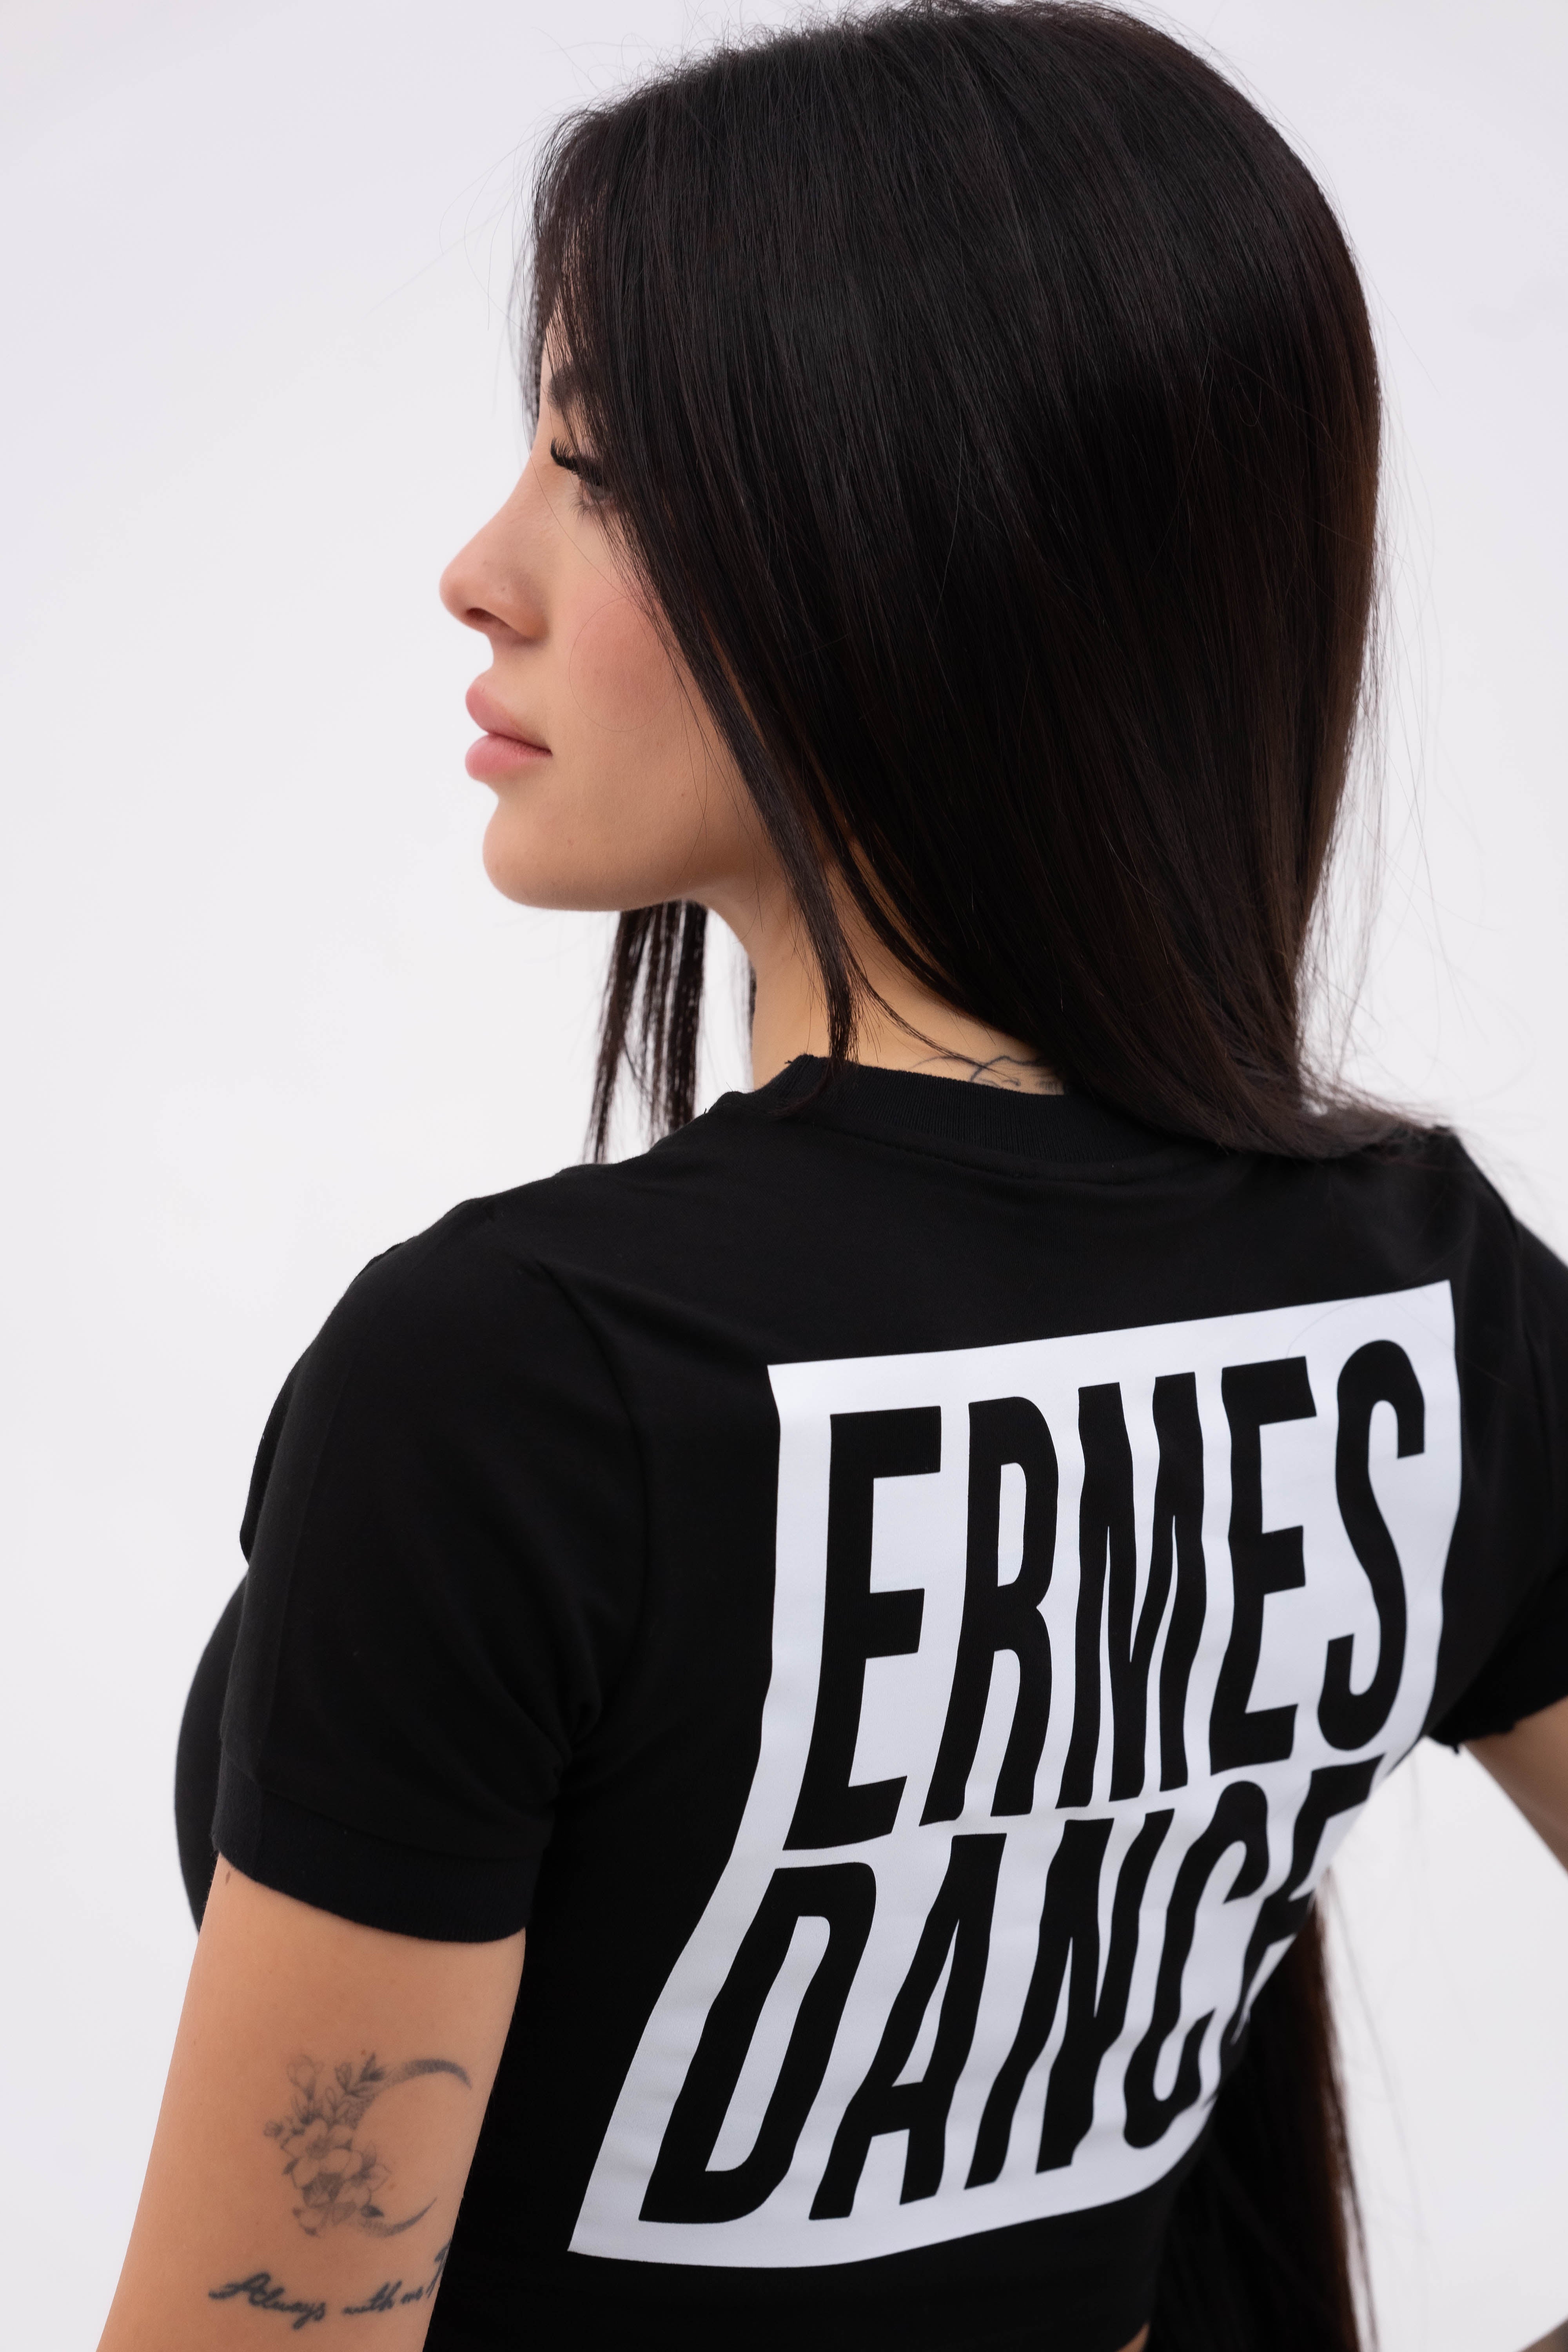 Square Ermes Dance Women's T-shirt